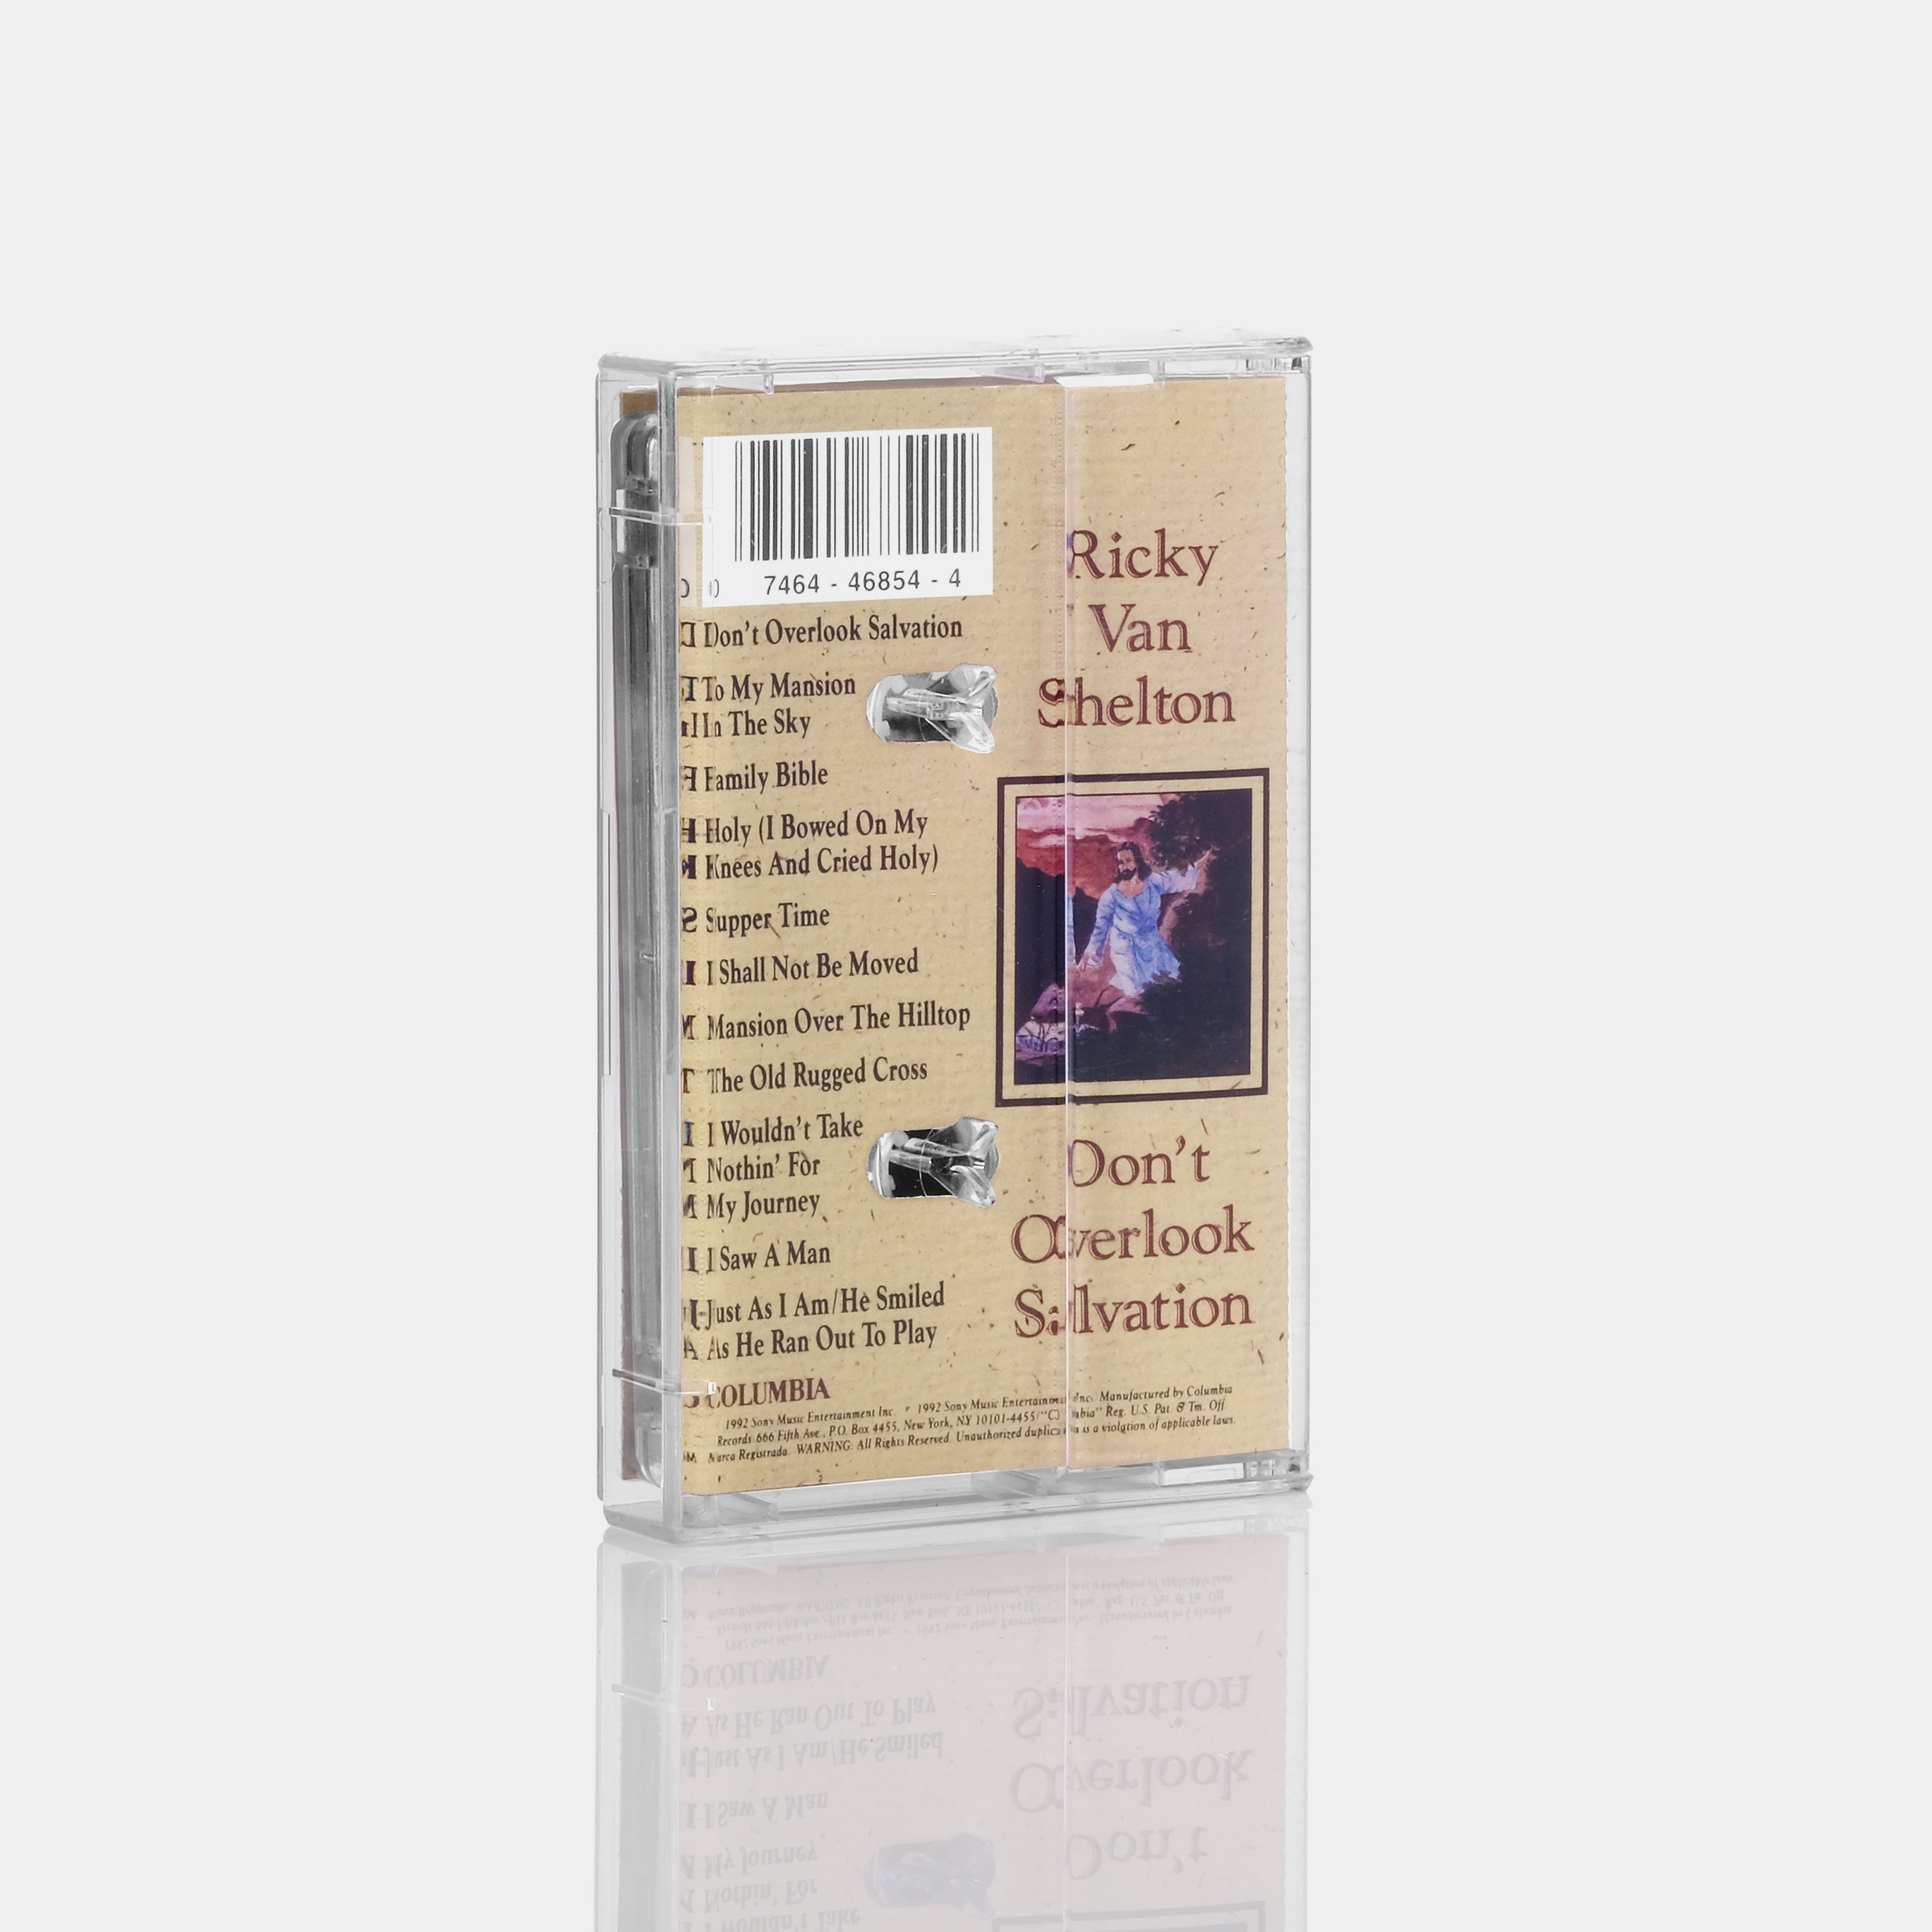 Ricky Van Shelton - Don't Overlook Salvation Cassette Tape